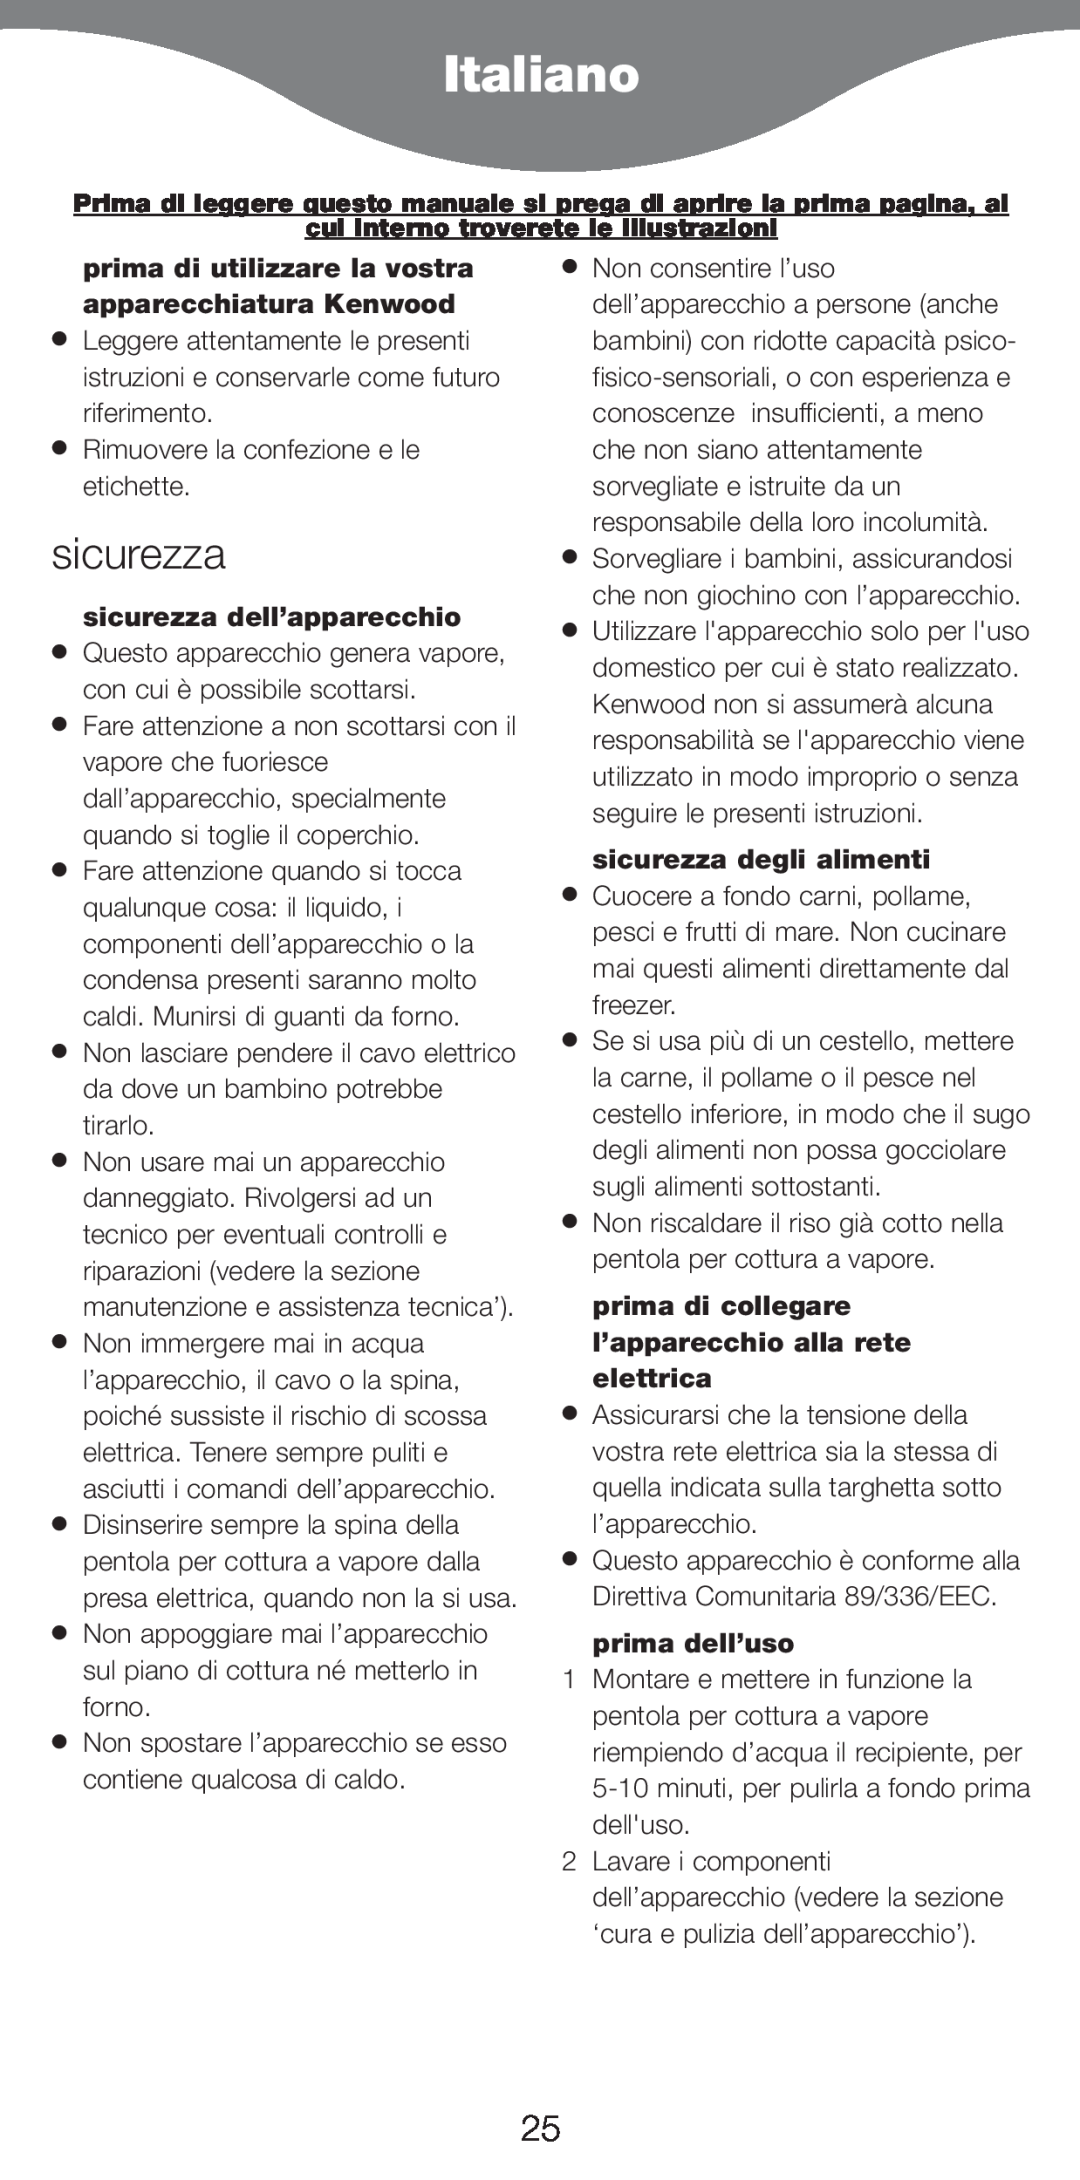 Kenwood FS620 manual Italiano, prima di utilizzare la vostra apparecchiatura Kenwood, sicurezza dell’apparecchio 